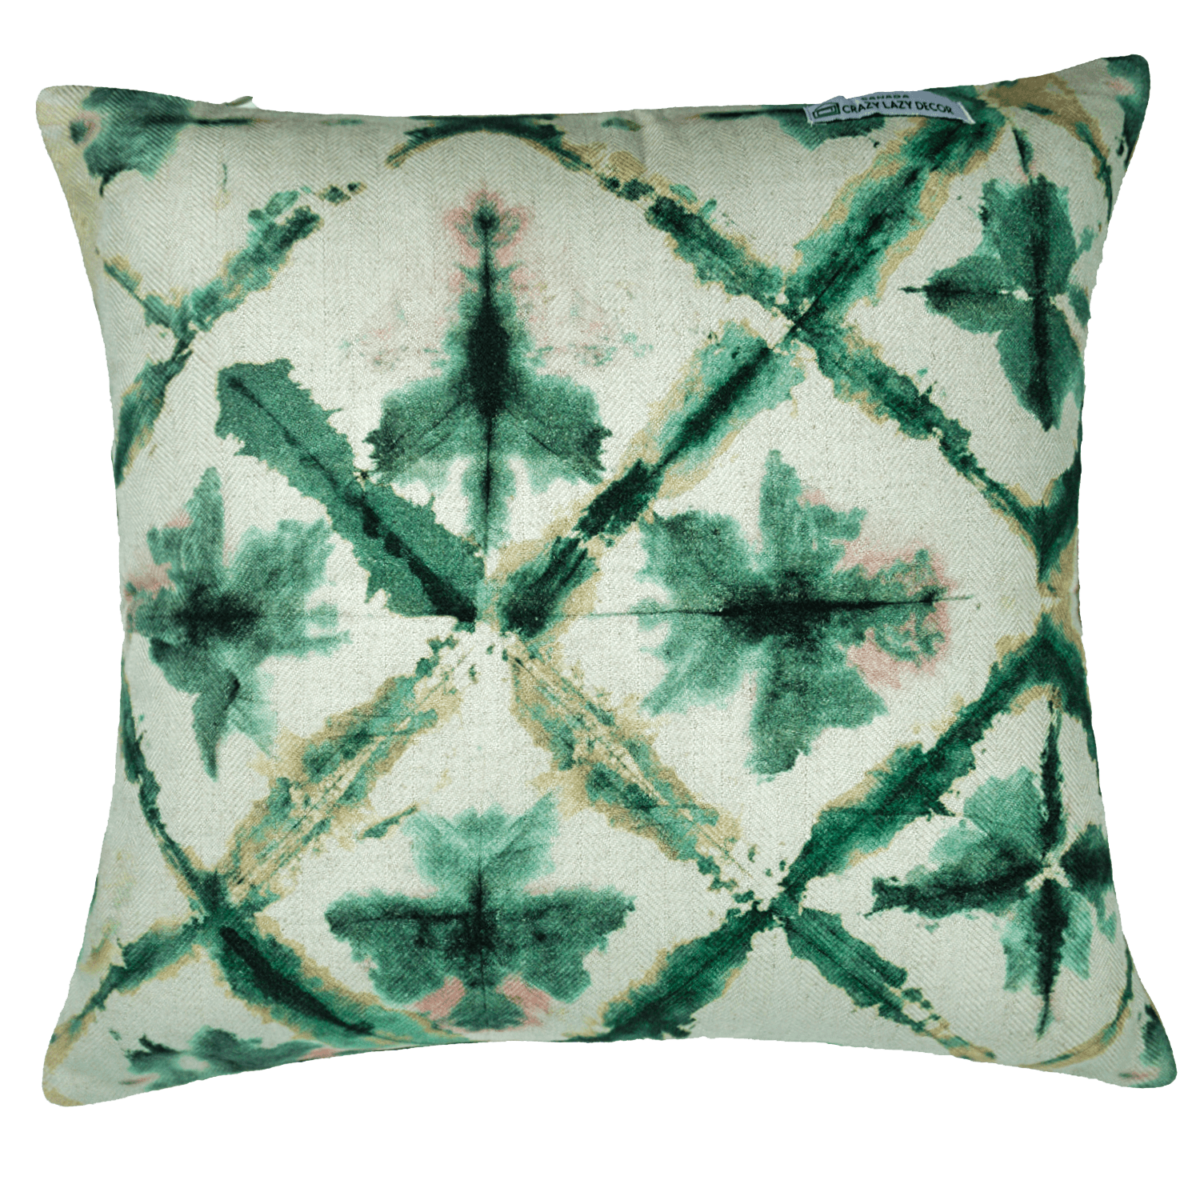 shibori seagreen printed decorative pillow cover 16 X 16